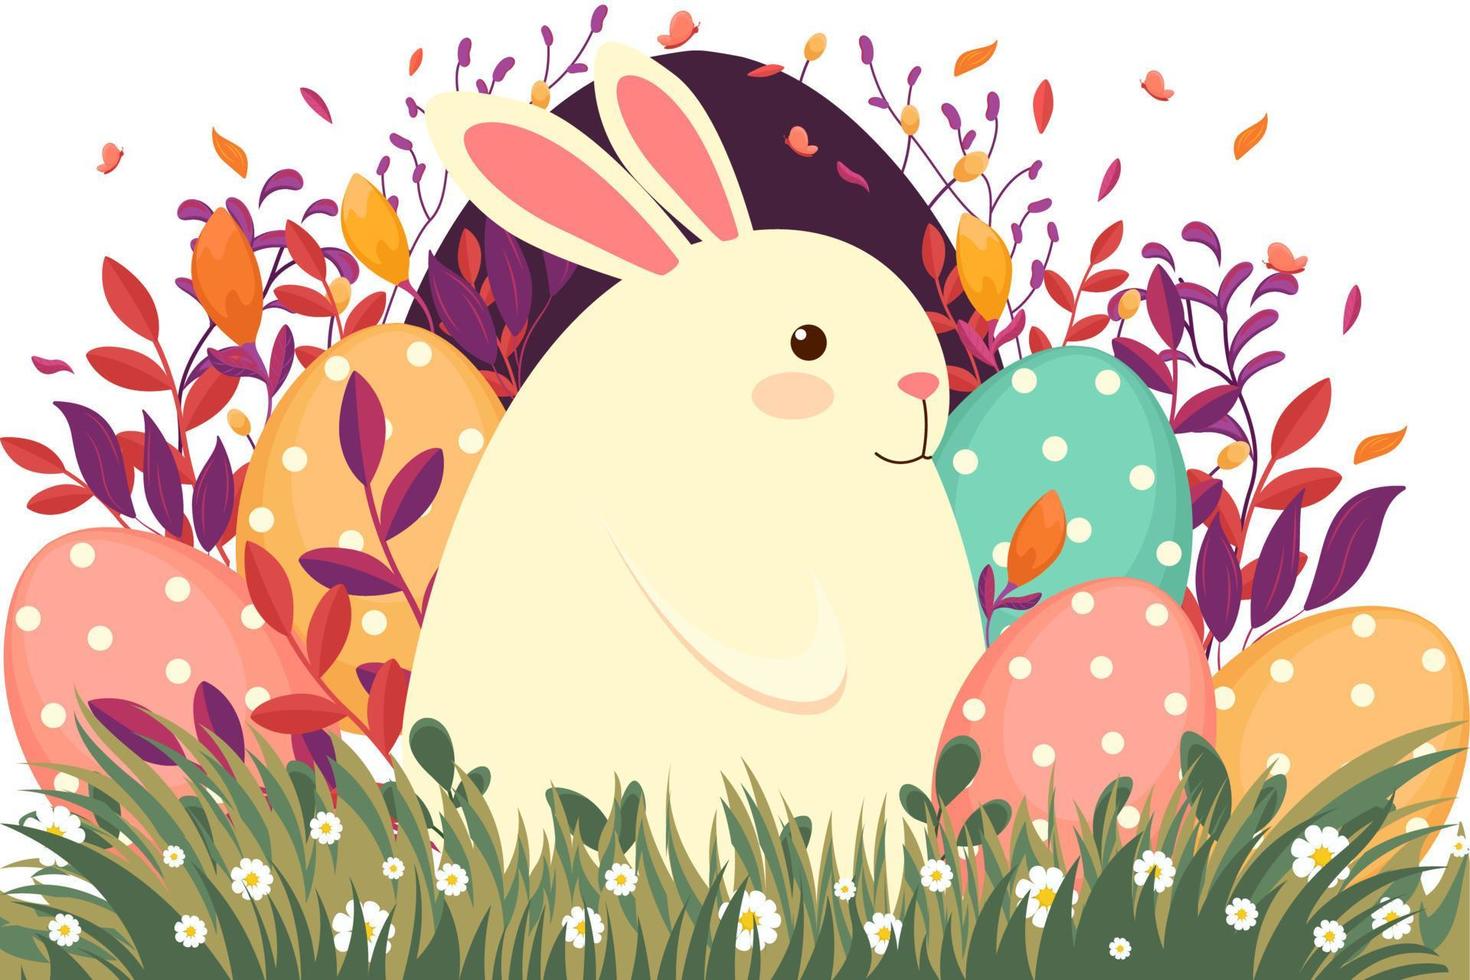 Pascua de Resurrección ilustración con flores, Pascua de Resurrección huevos, flores, naturaleza y primavera, estacional tarjeta, fiesta ilustración vector